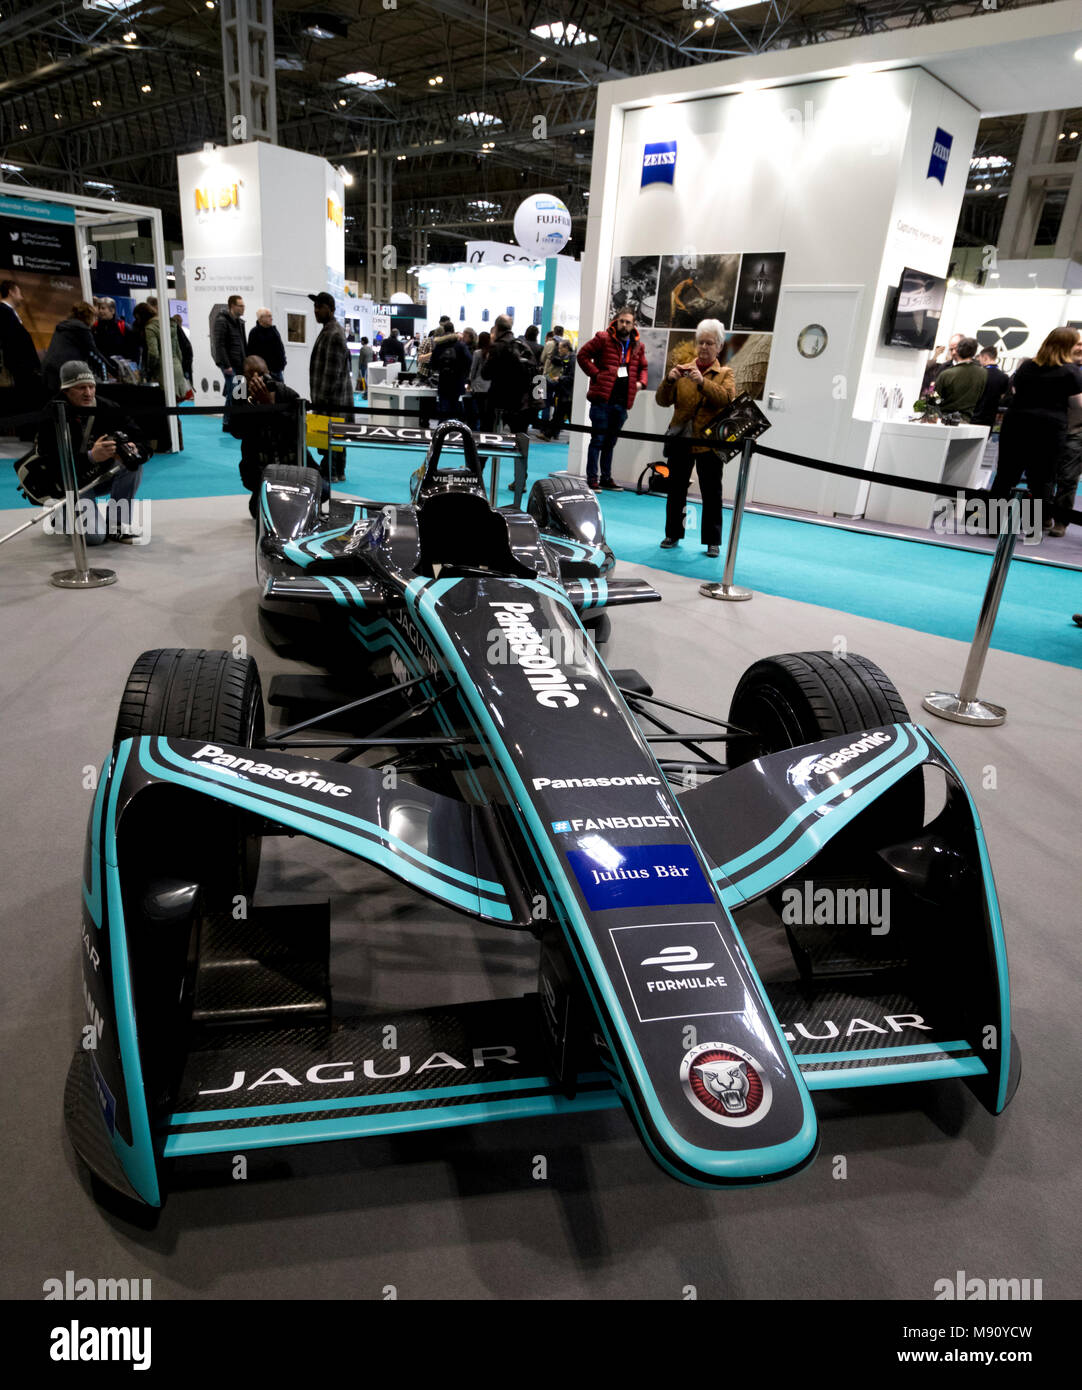 Une formule e voiture de course électrique lors d'une exposition au NEC à Birmingham Banque D'Images